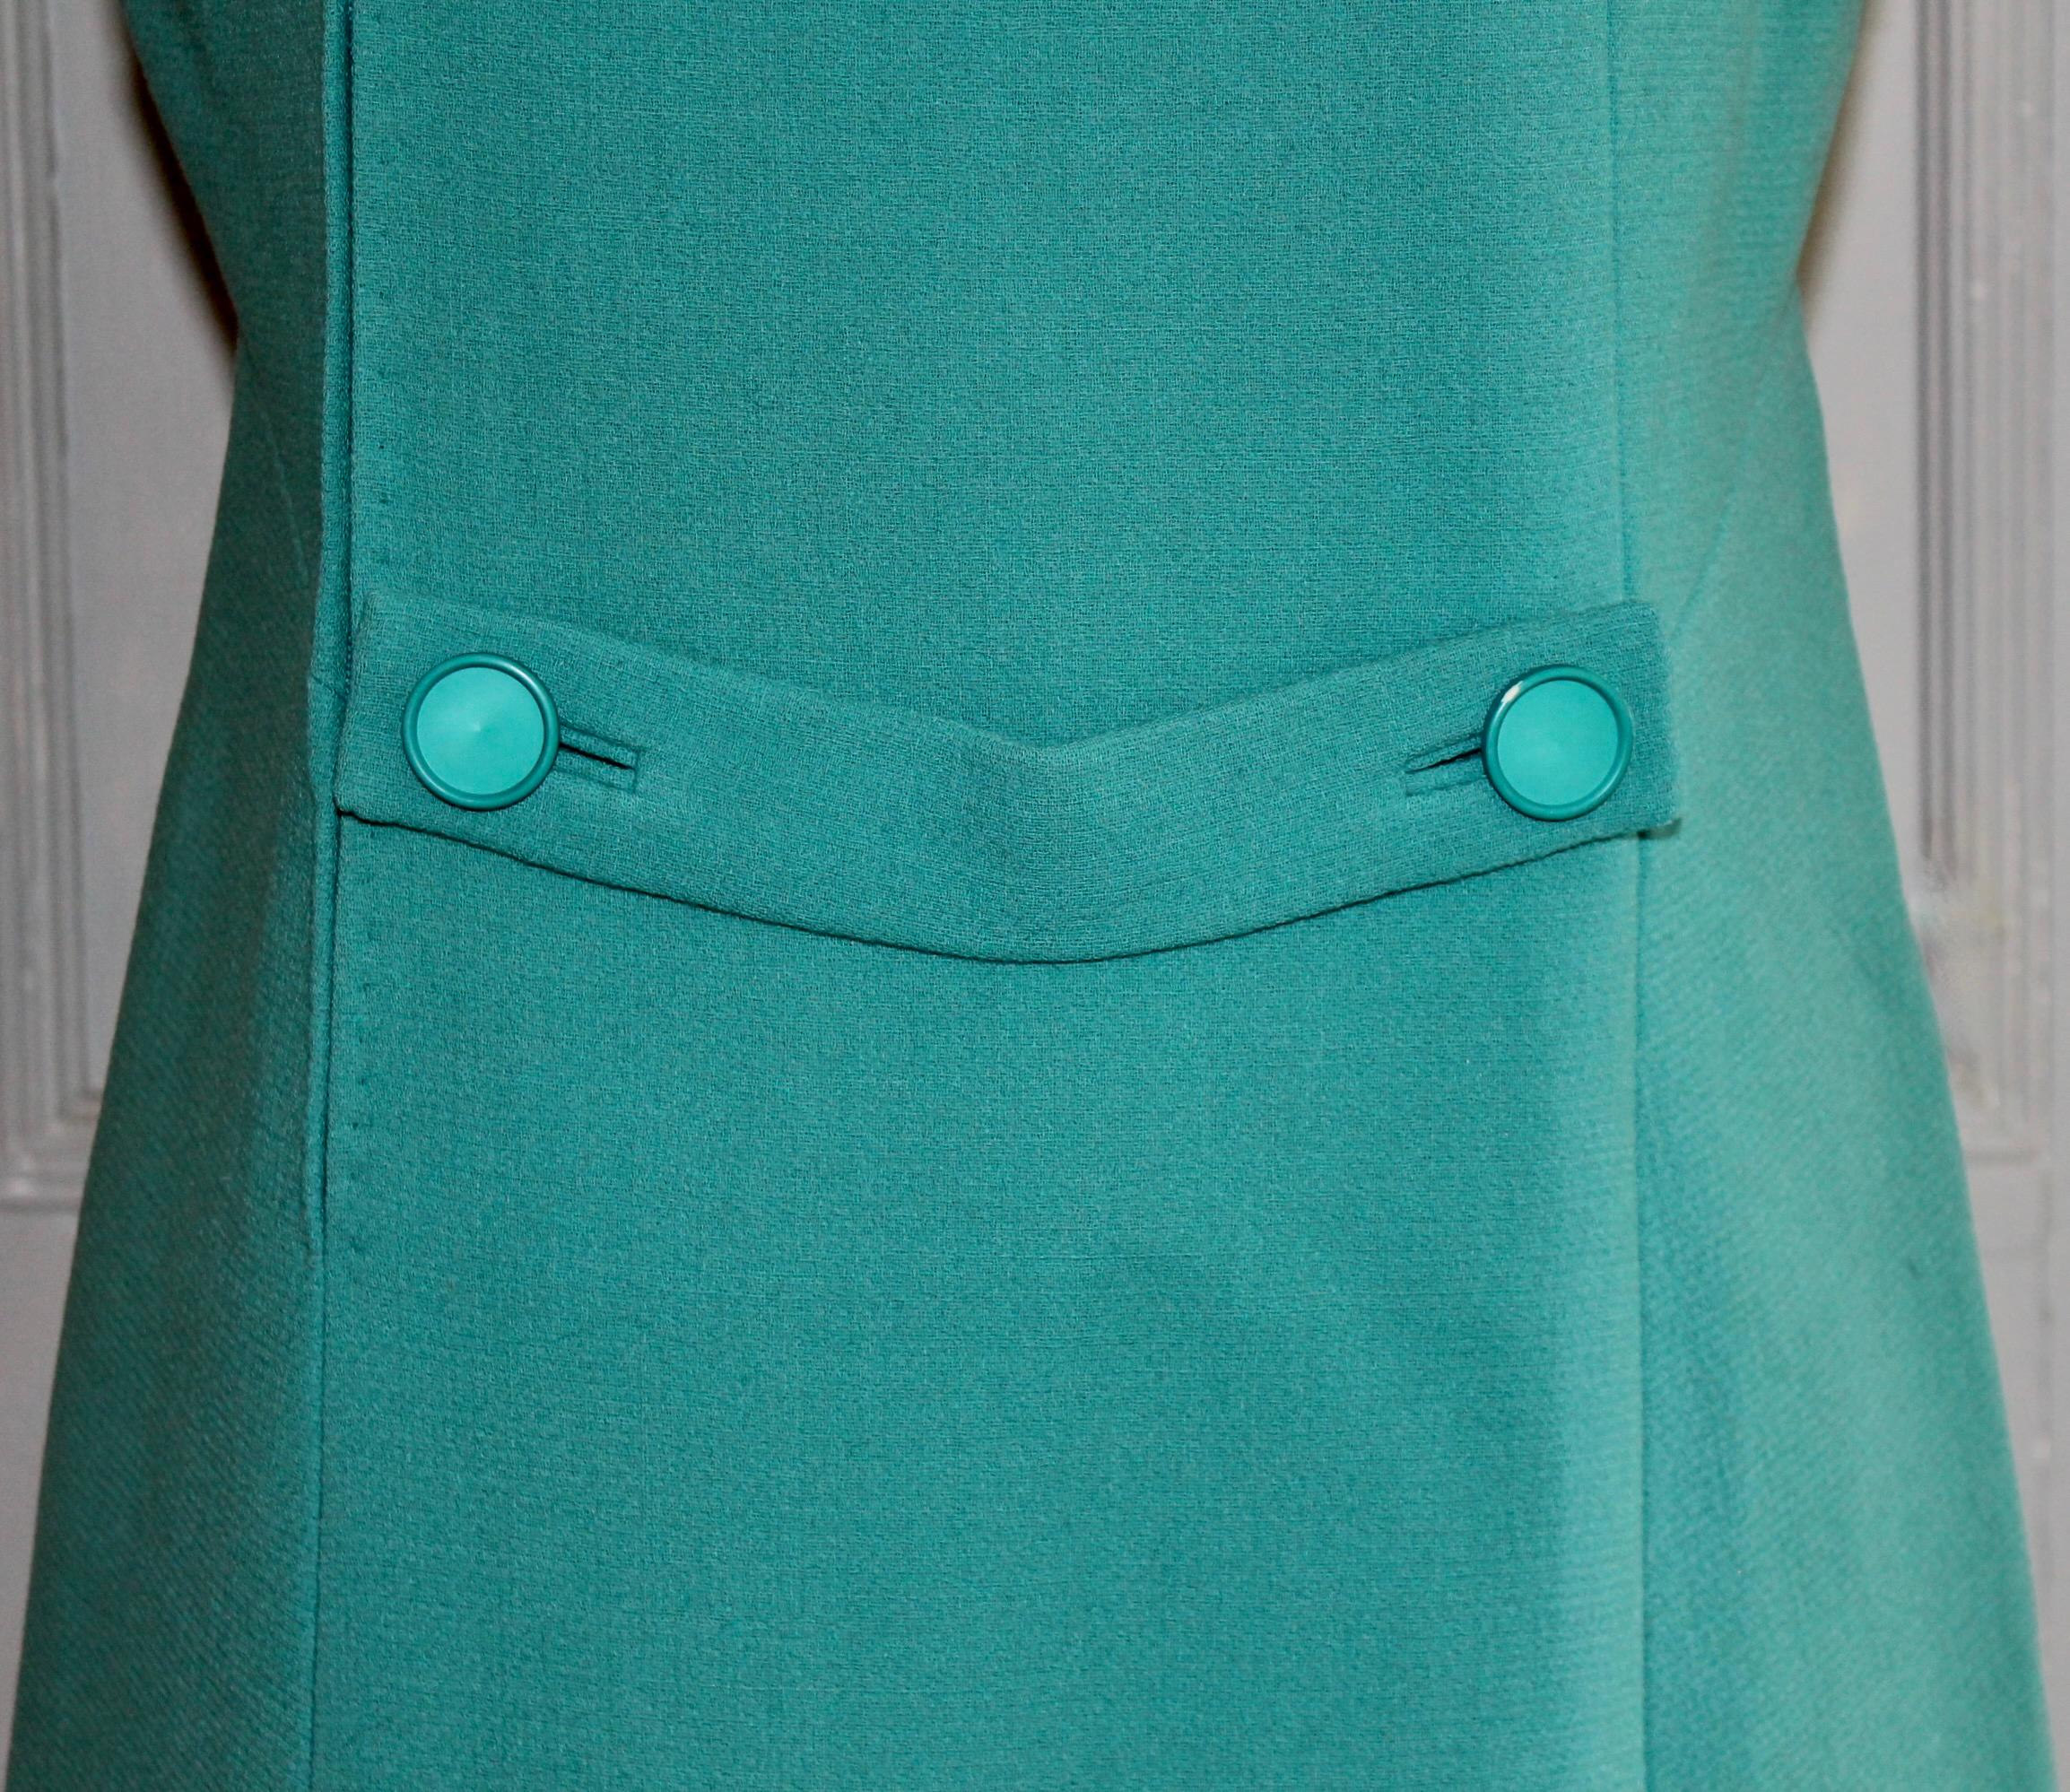 Jean Patou Paris Collection Boutique Green/Blue Day Dress For Sale 2